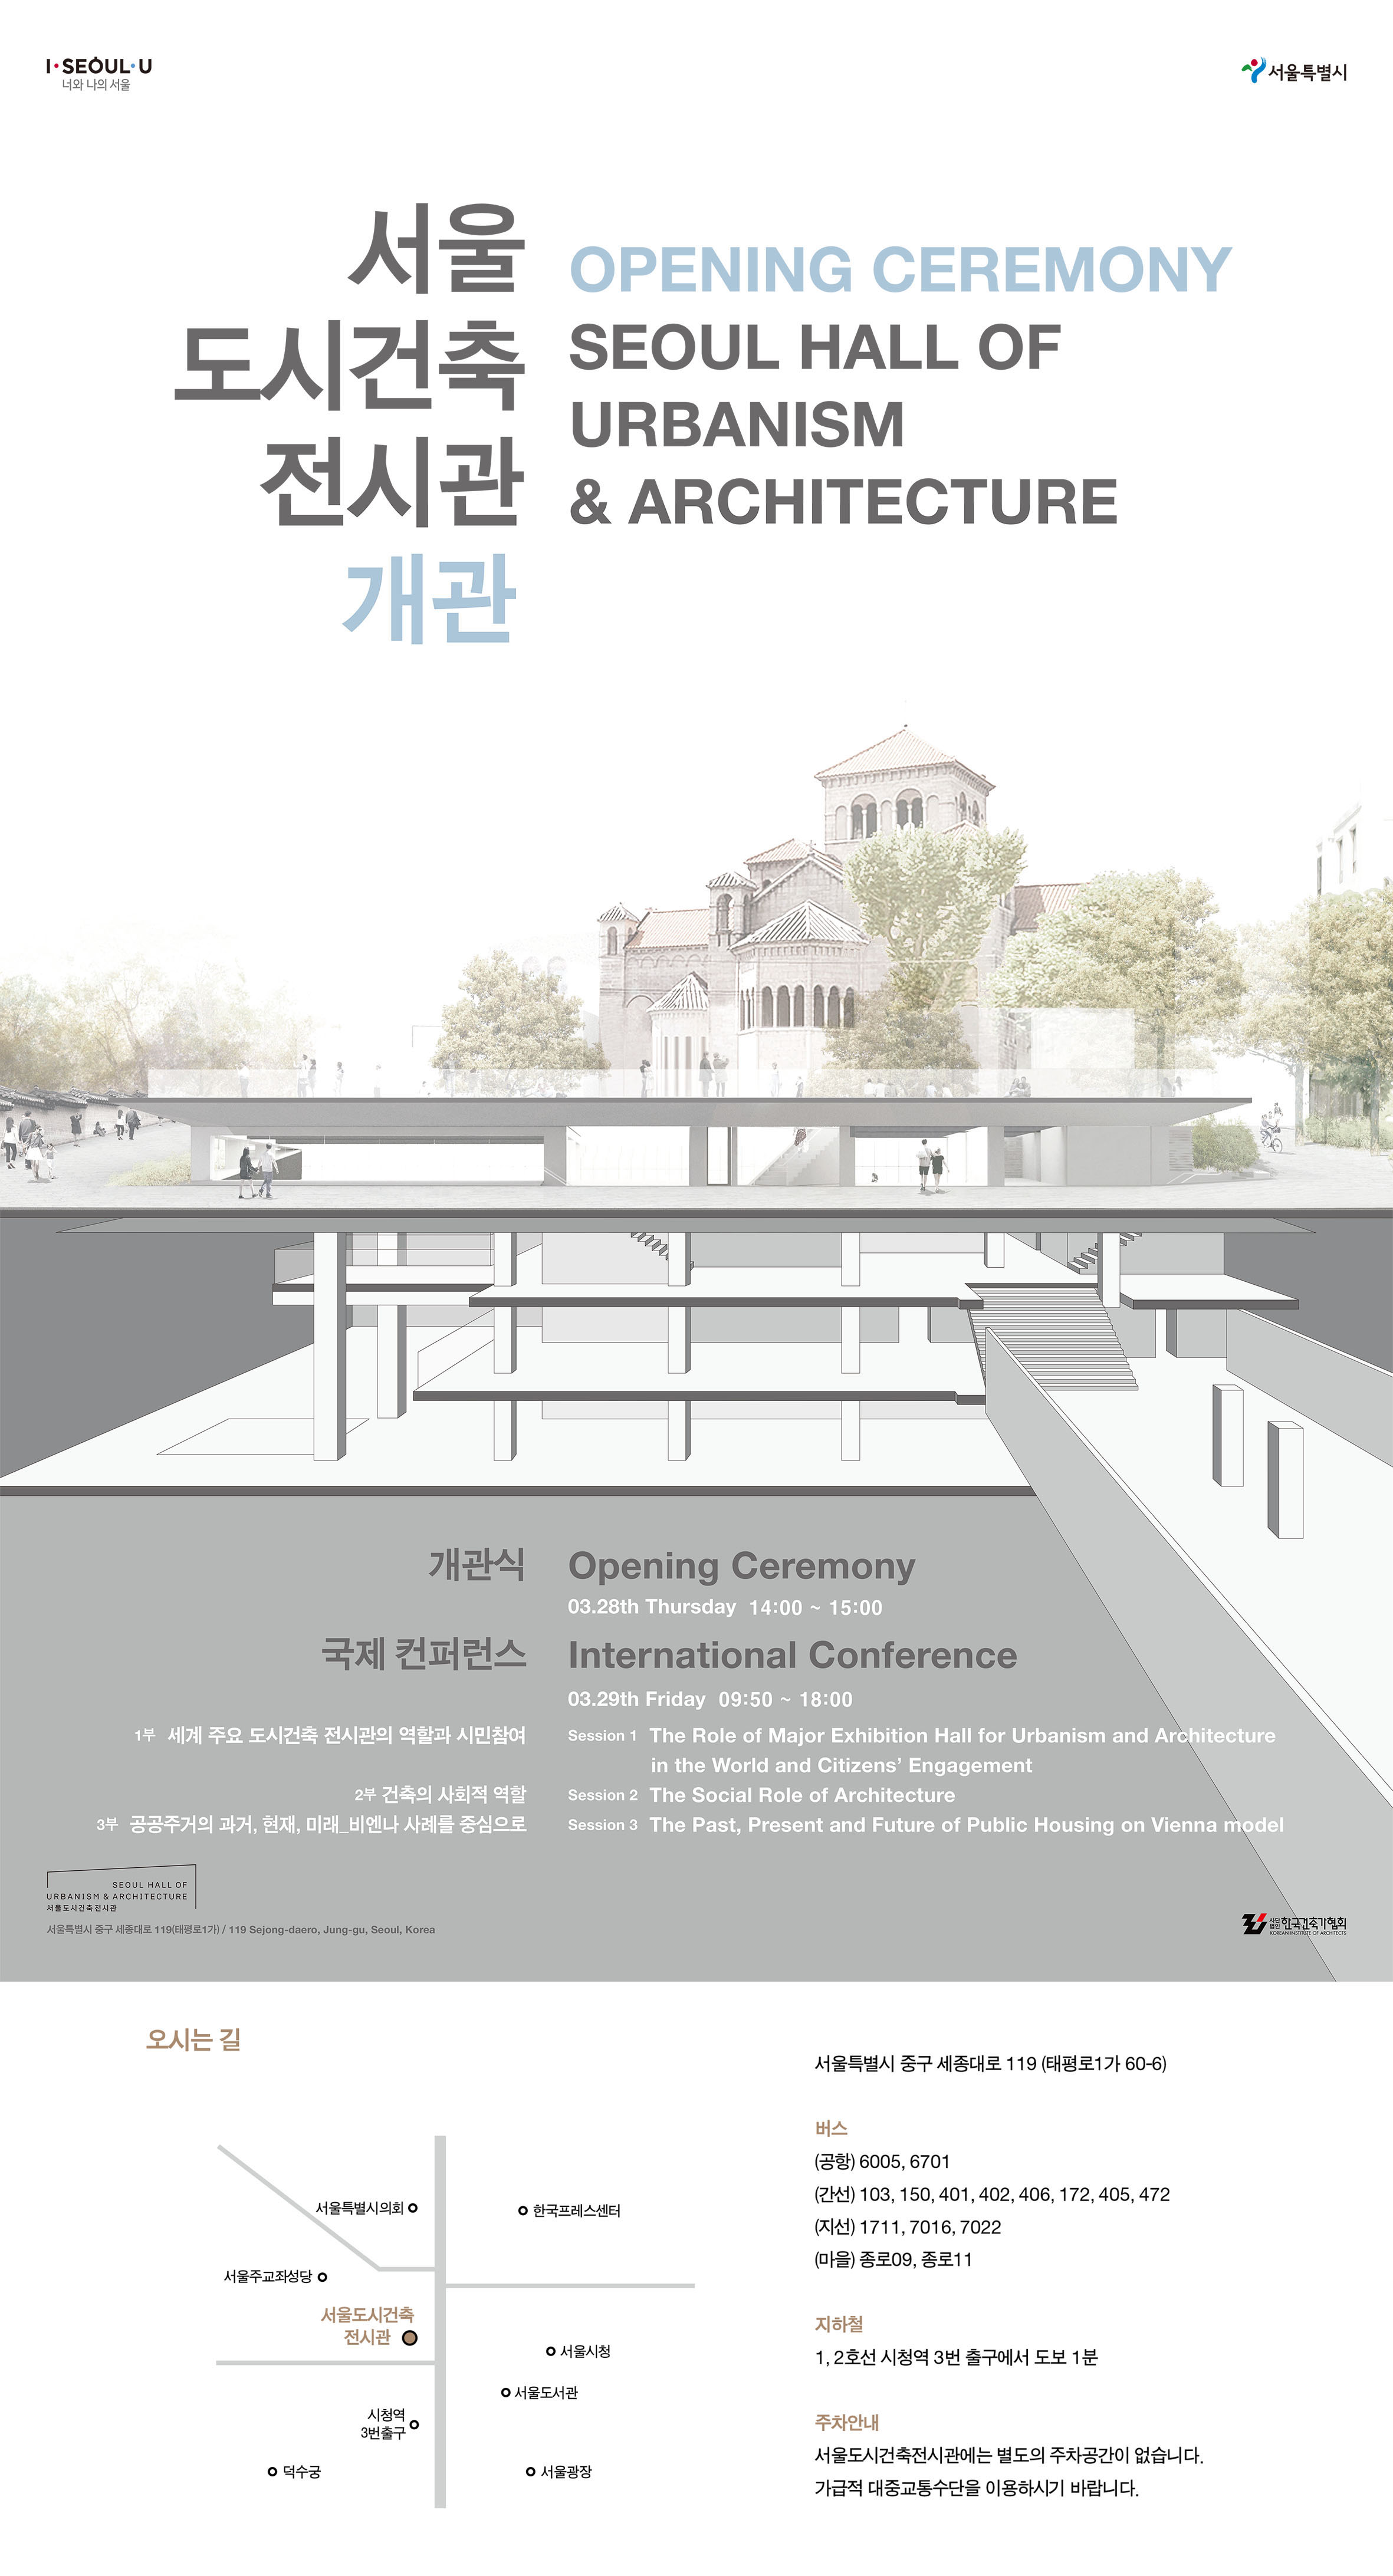 [행사] 서울도시건축전시관 개관